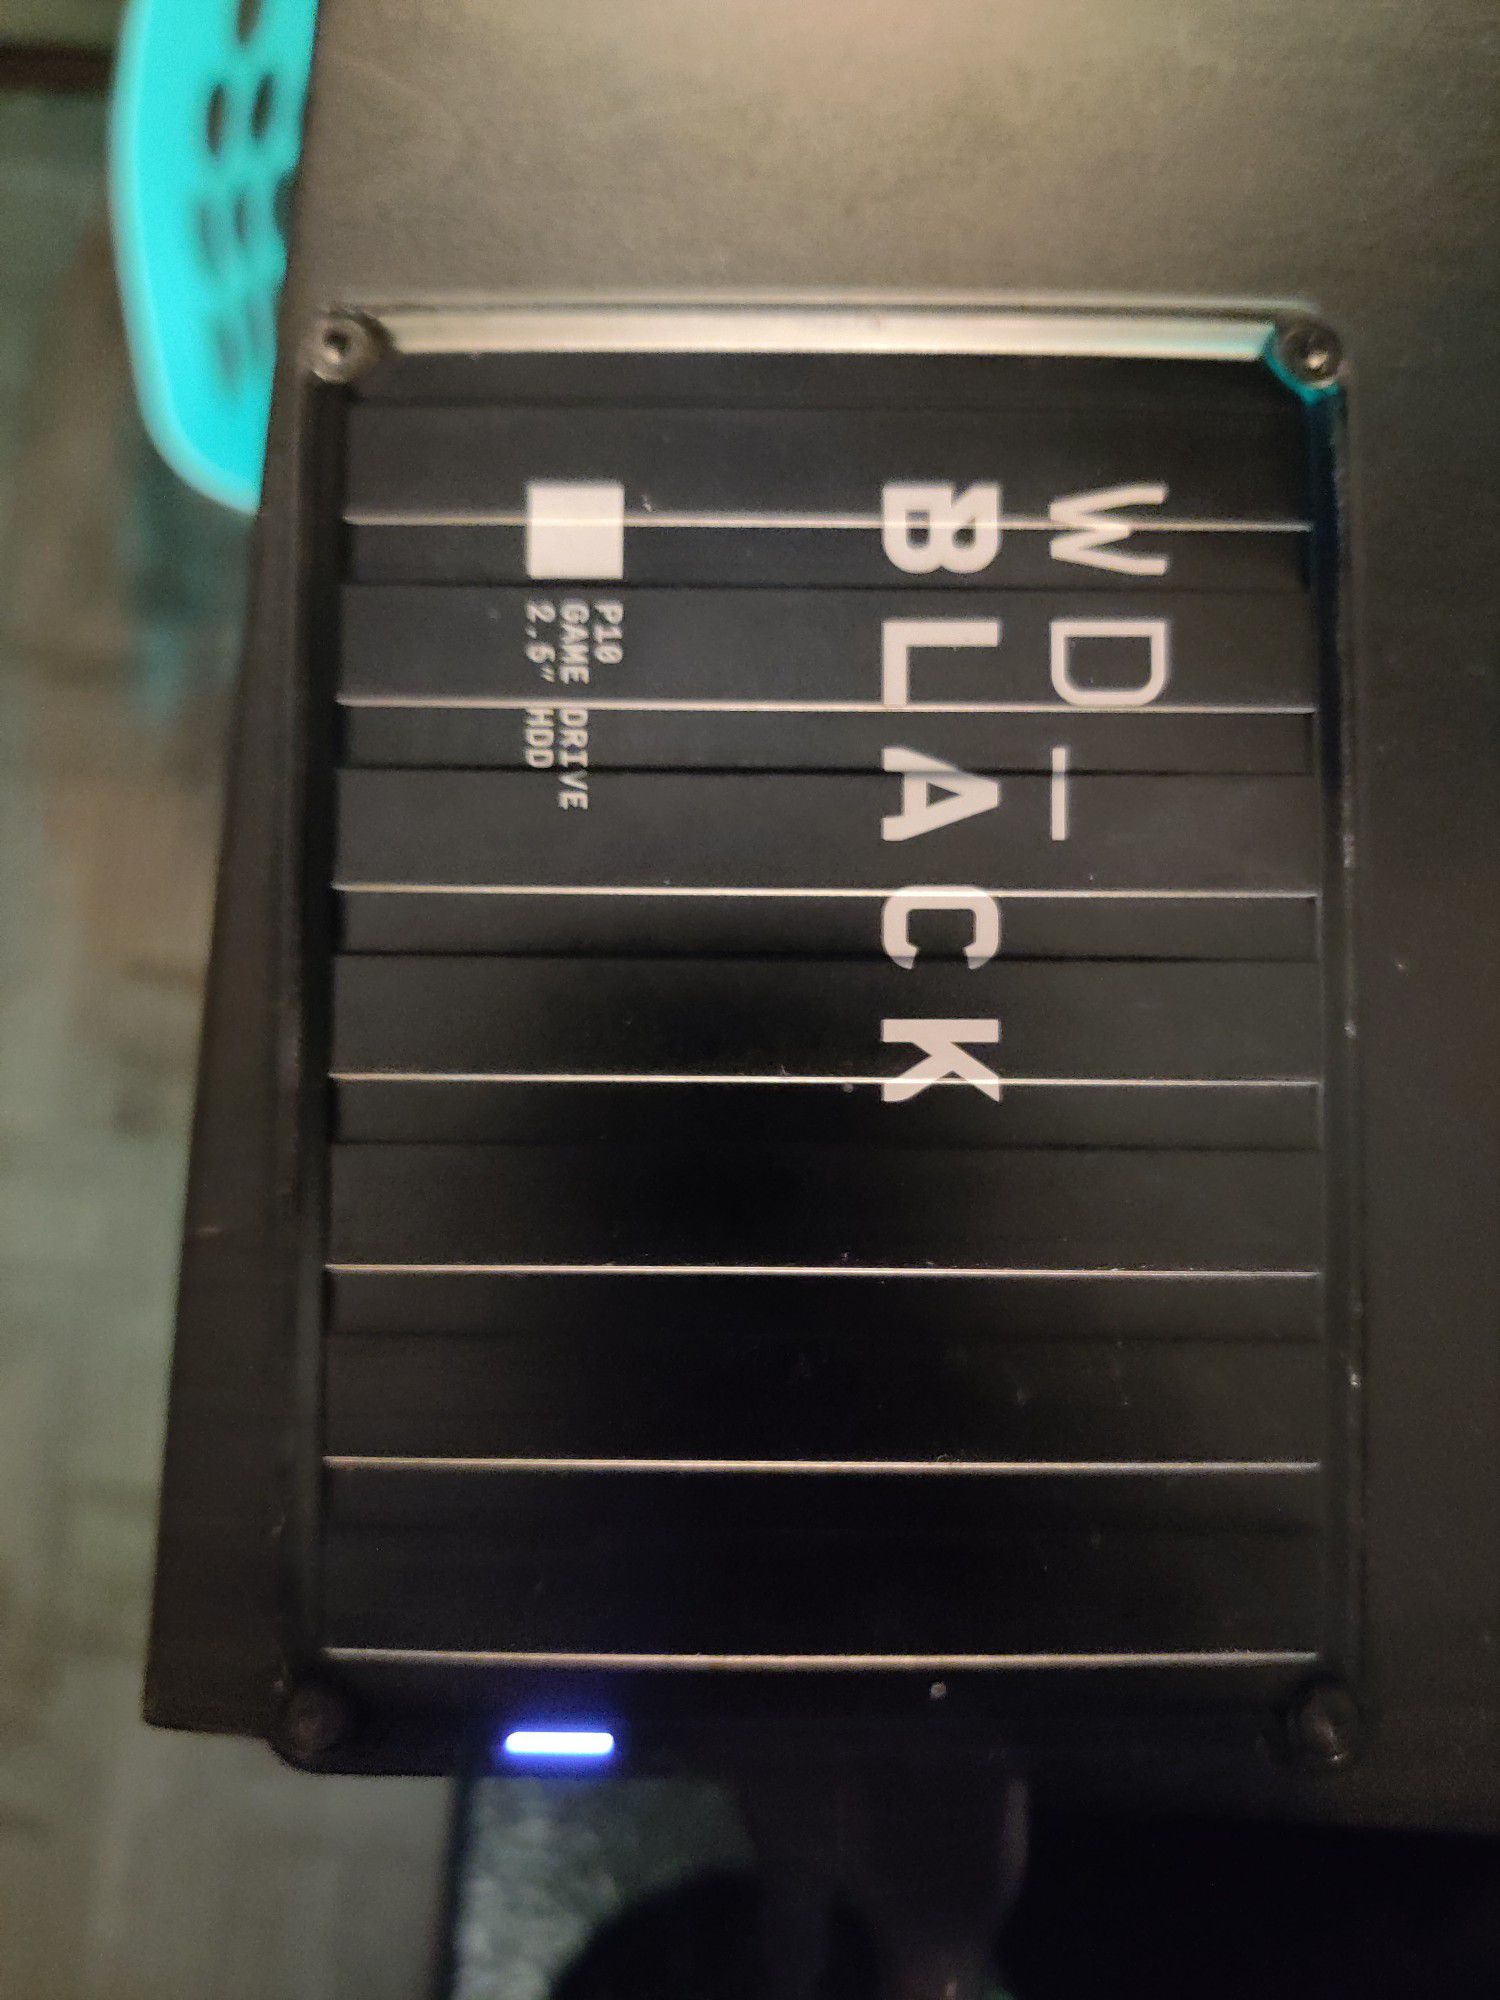 WD black 4tb external hard drive